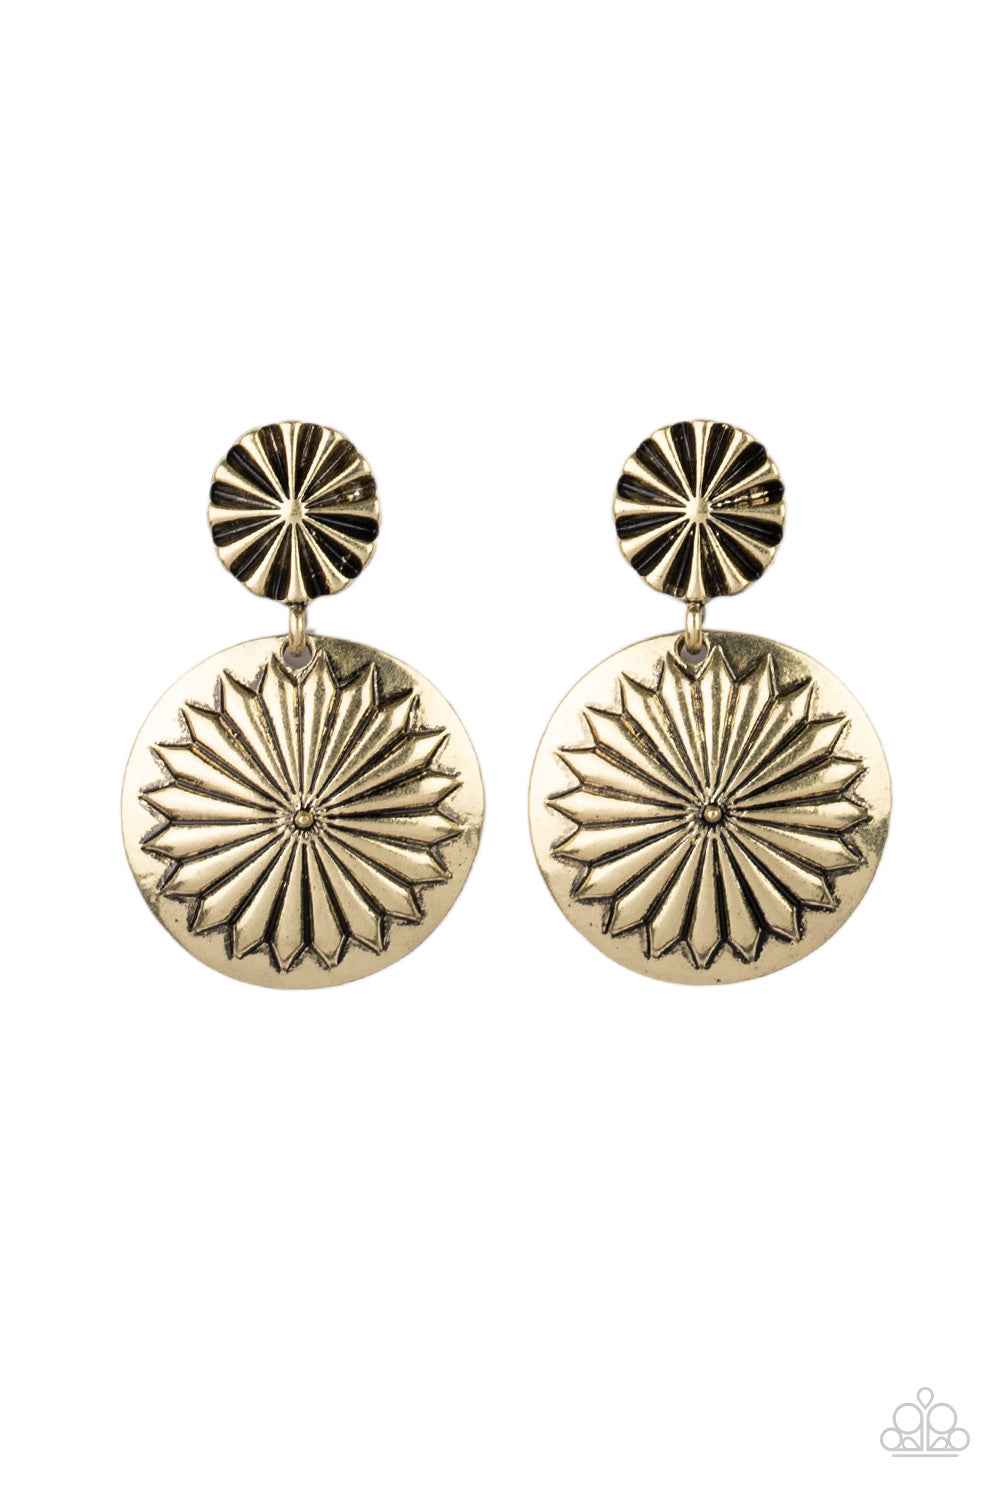 Fierce Florals - Brass Earrings